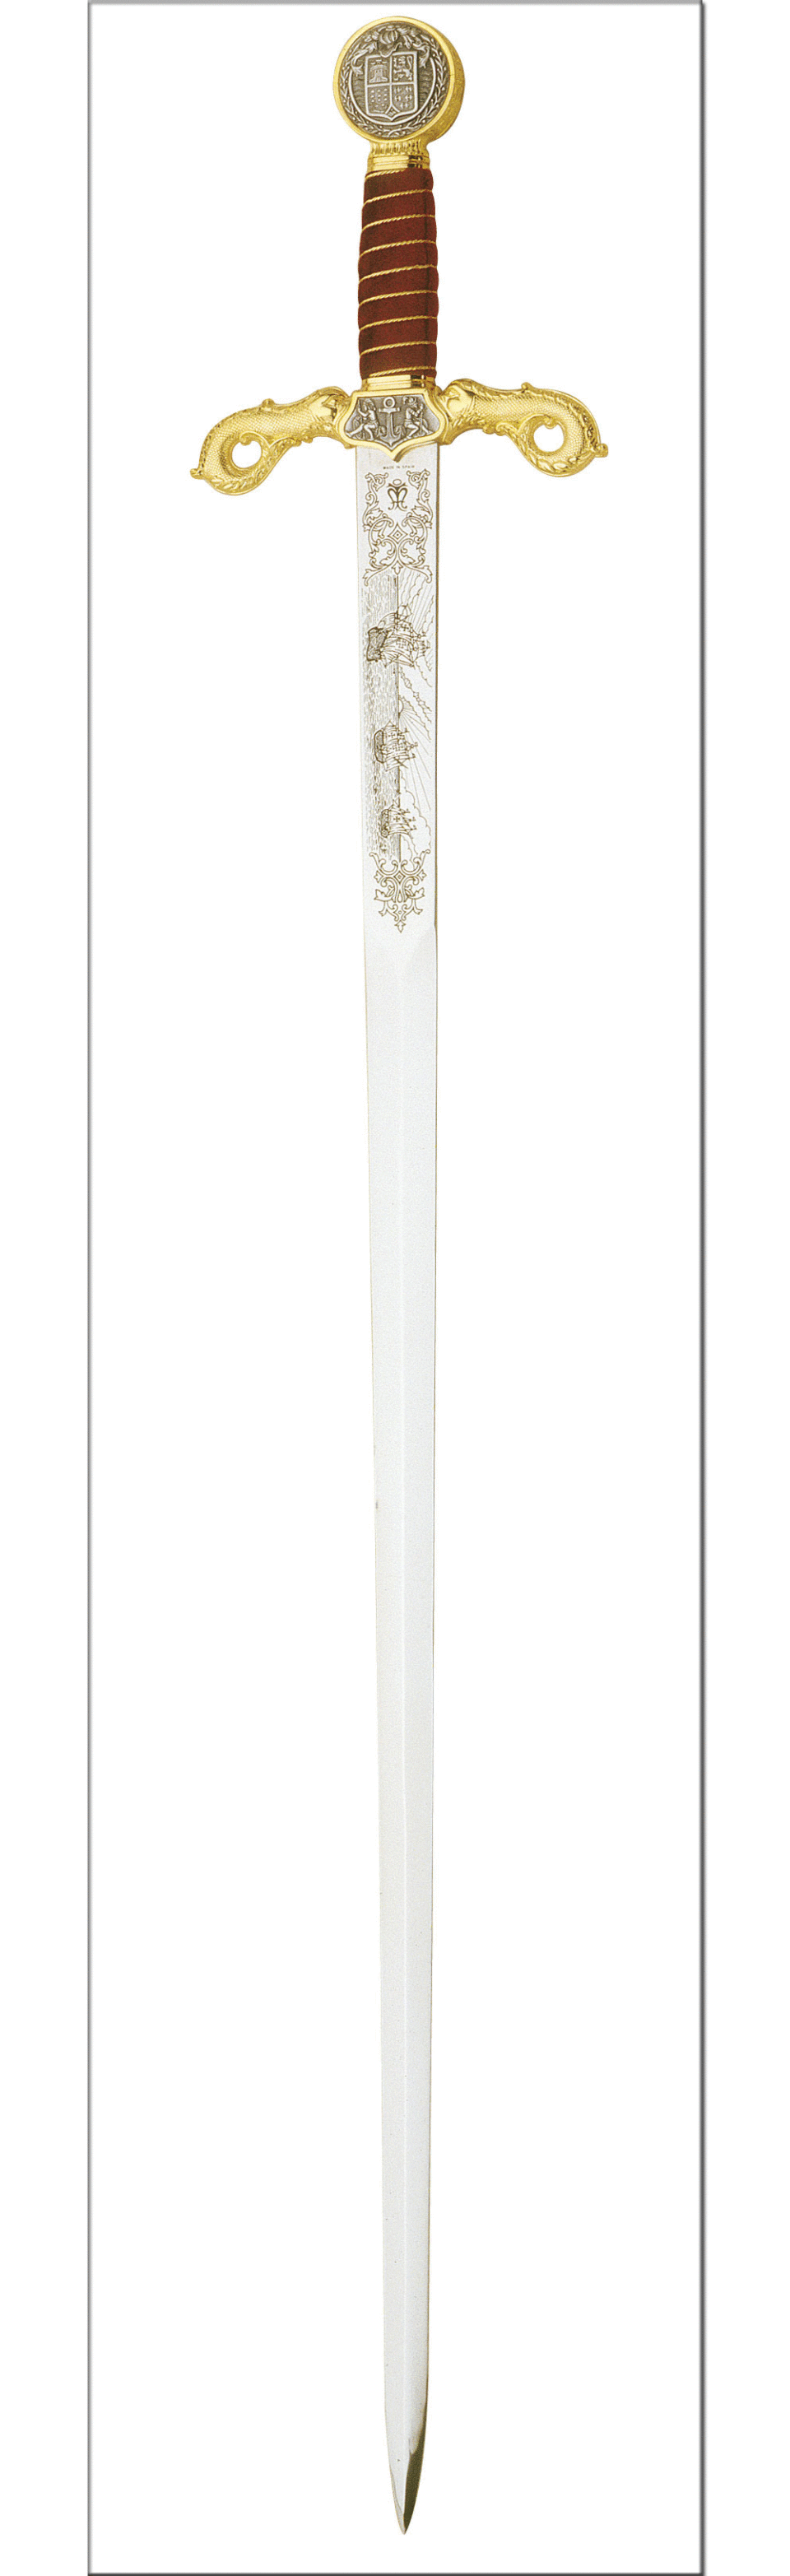 Espada de Cristóbal Colón